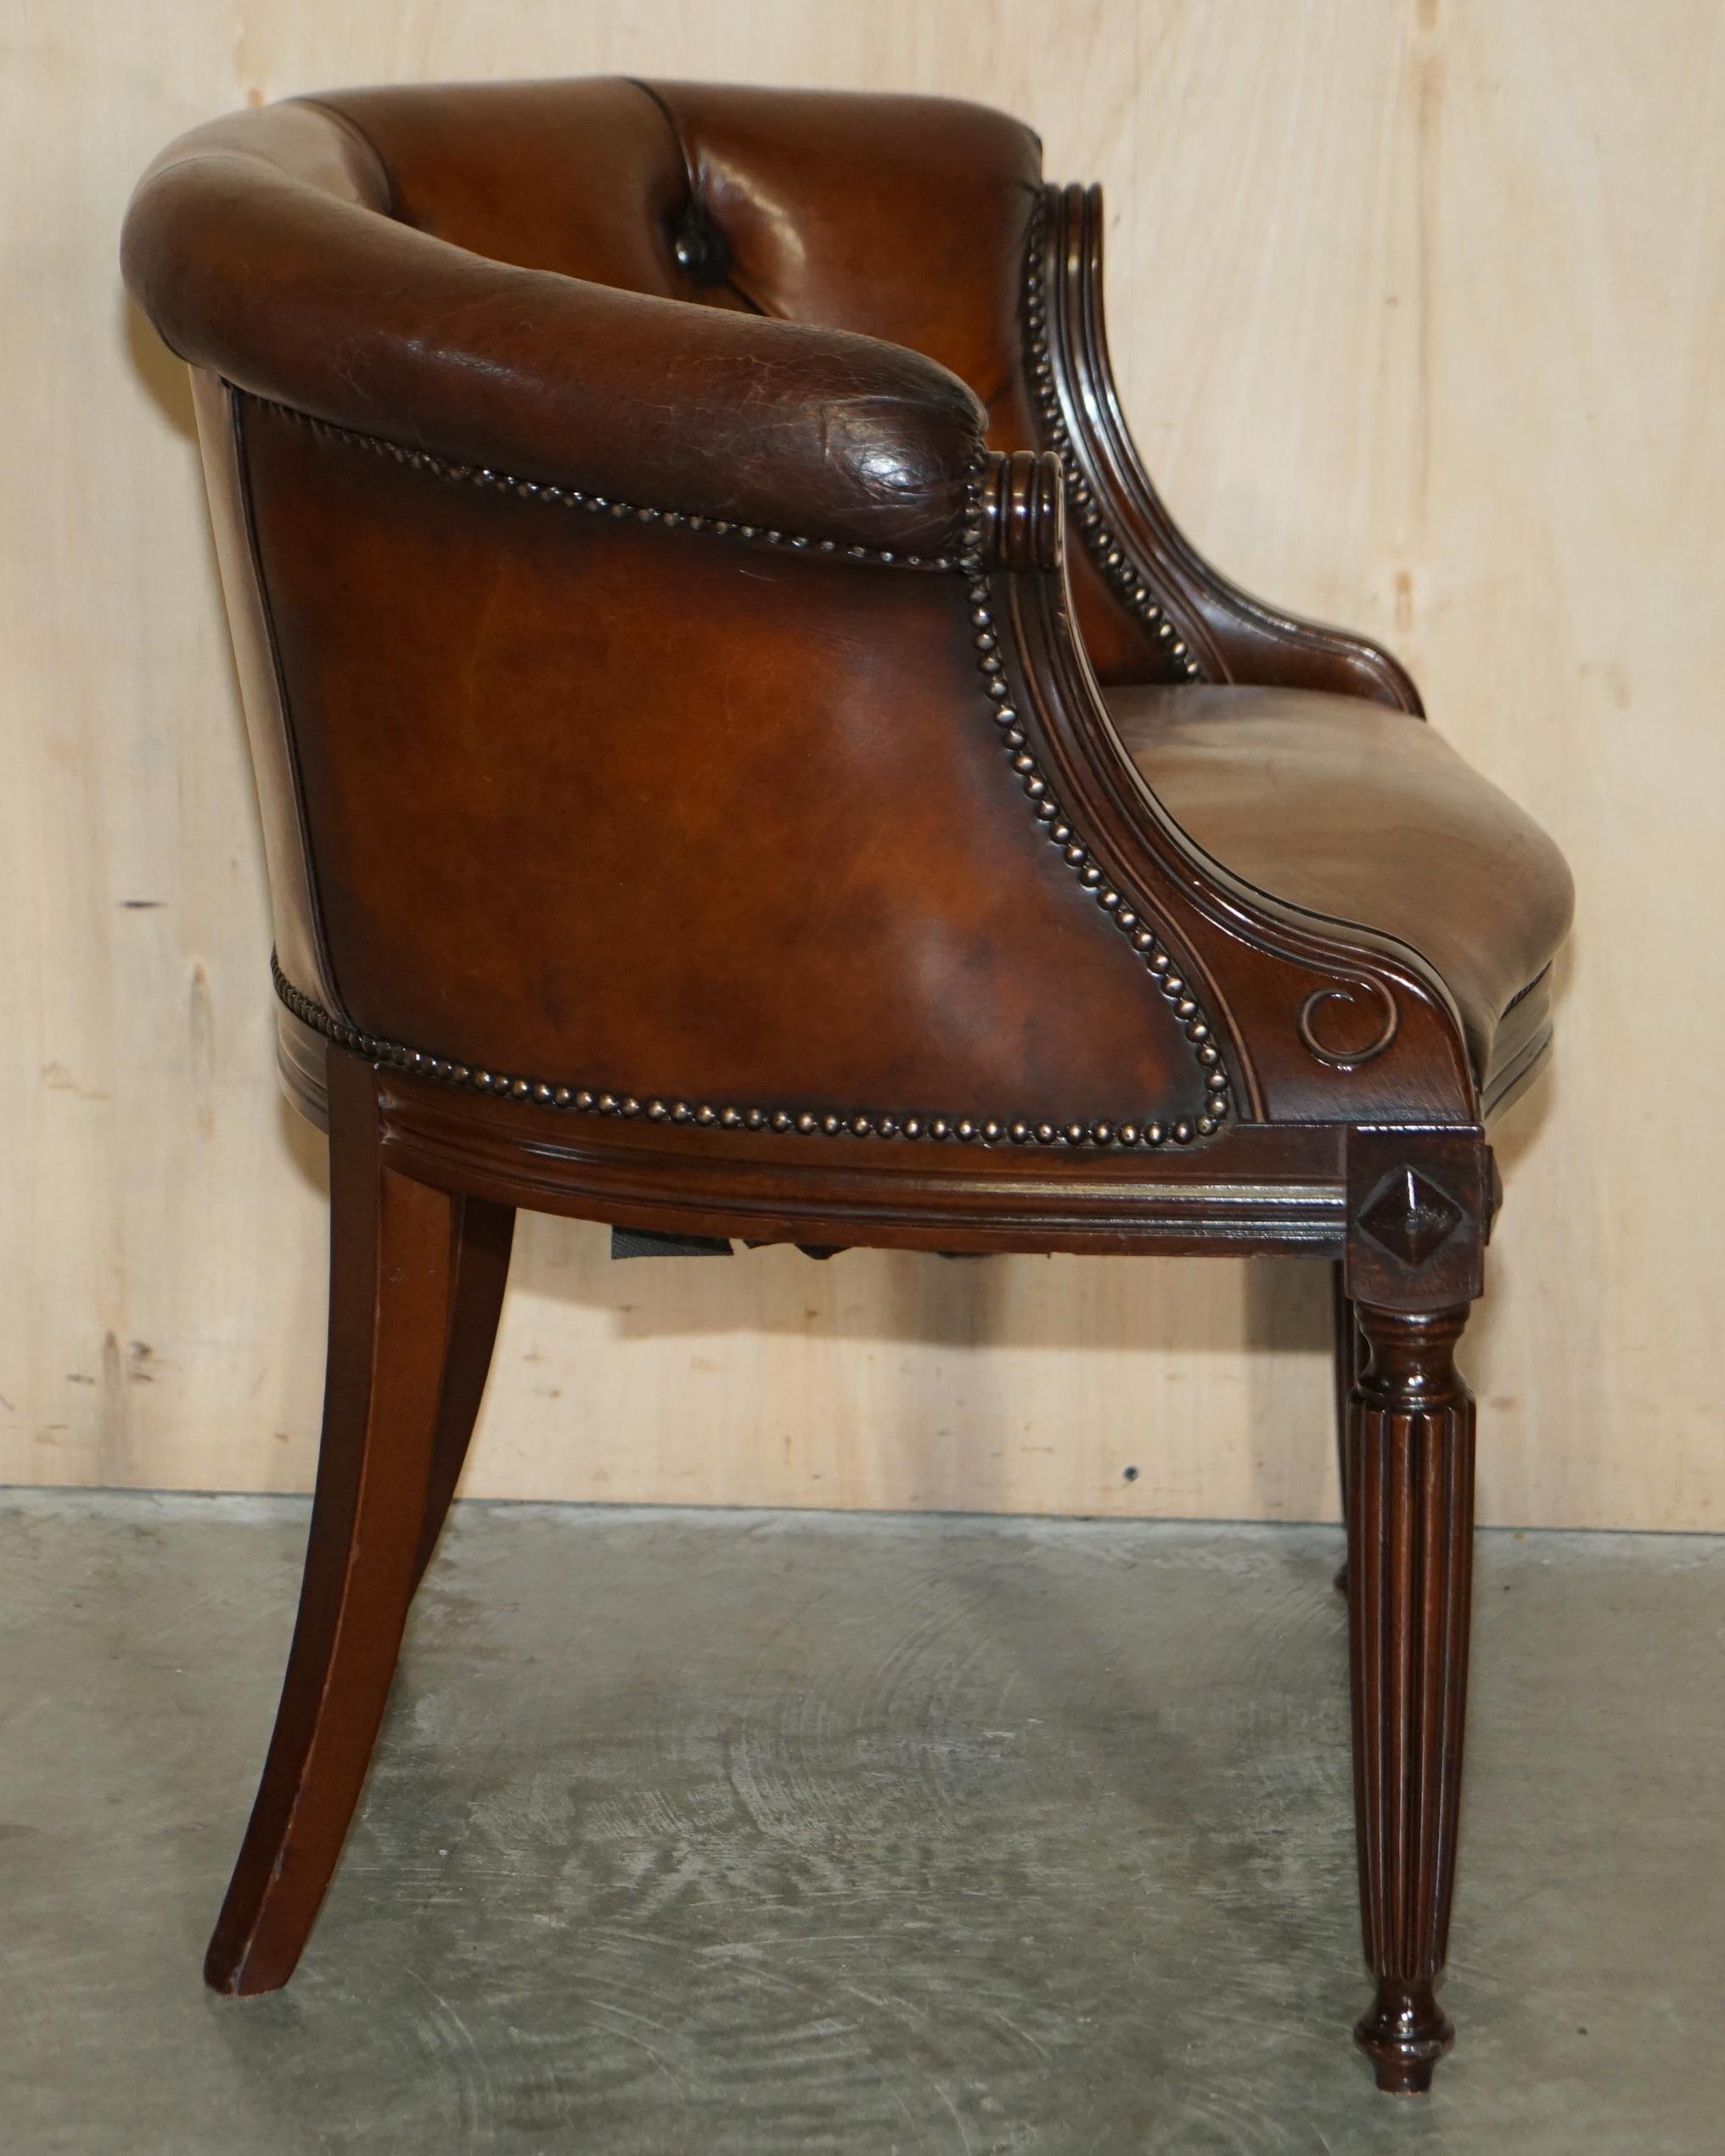 Fein vollständig restauriert Vintage Chesterfield getuftet Hand gefärbt Wanne Club Sessel 8